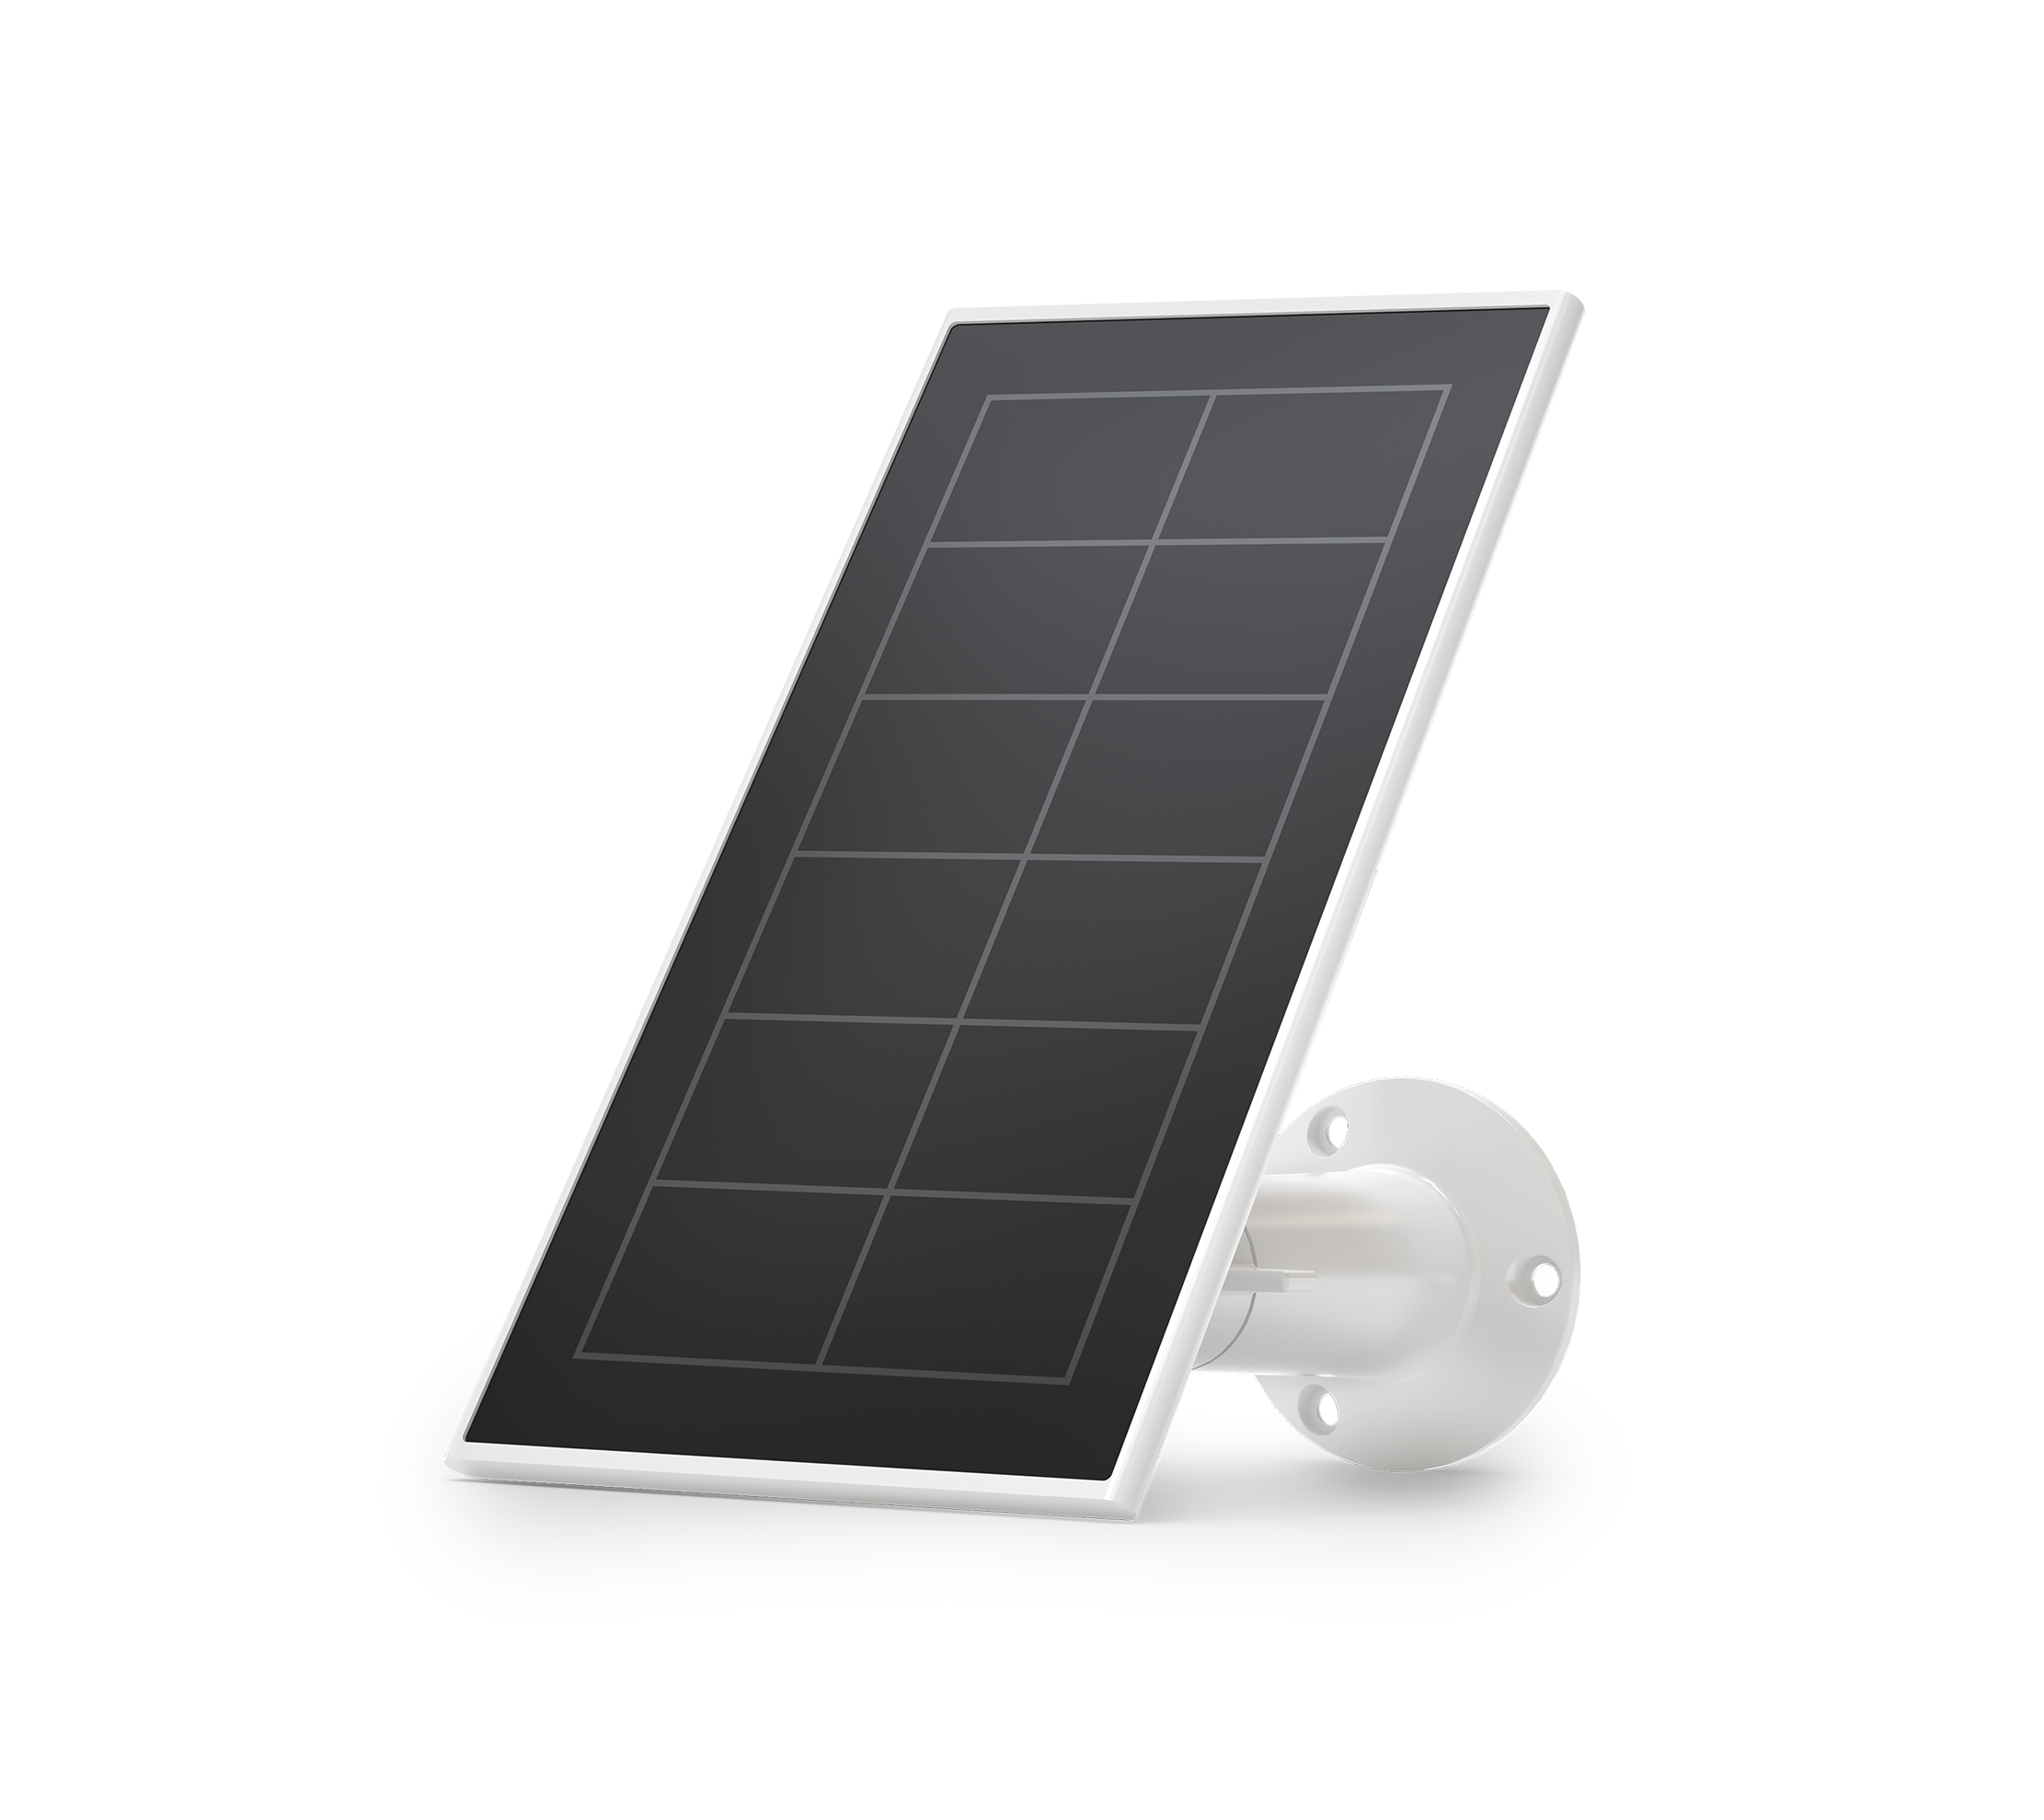 Arlo Essential Solar Panel - White